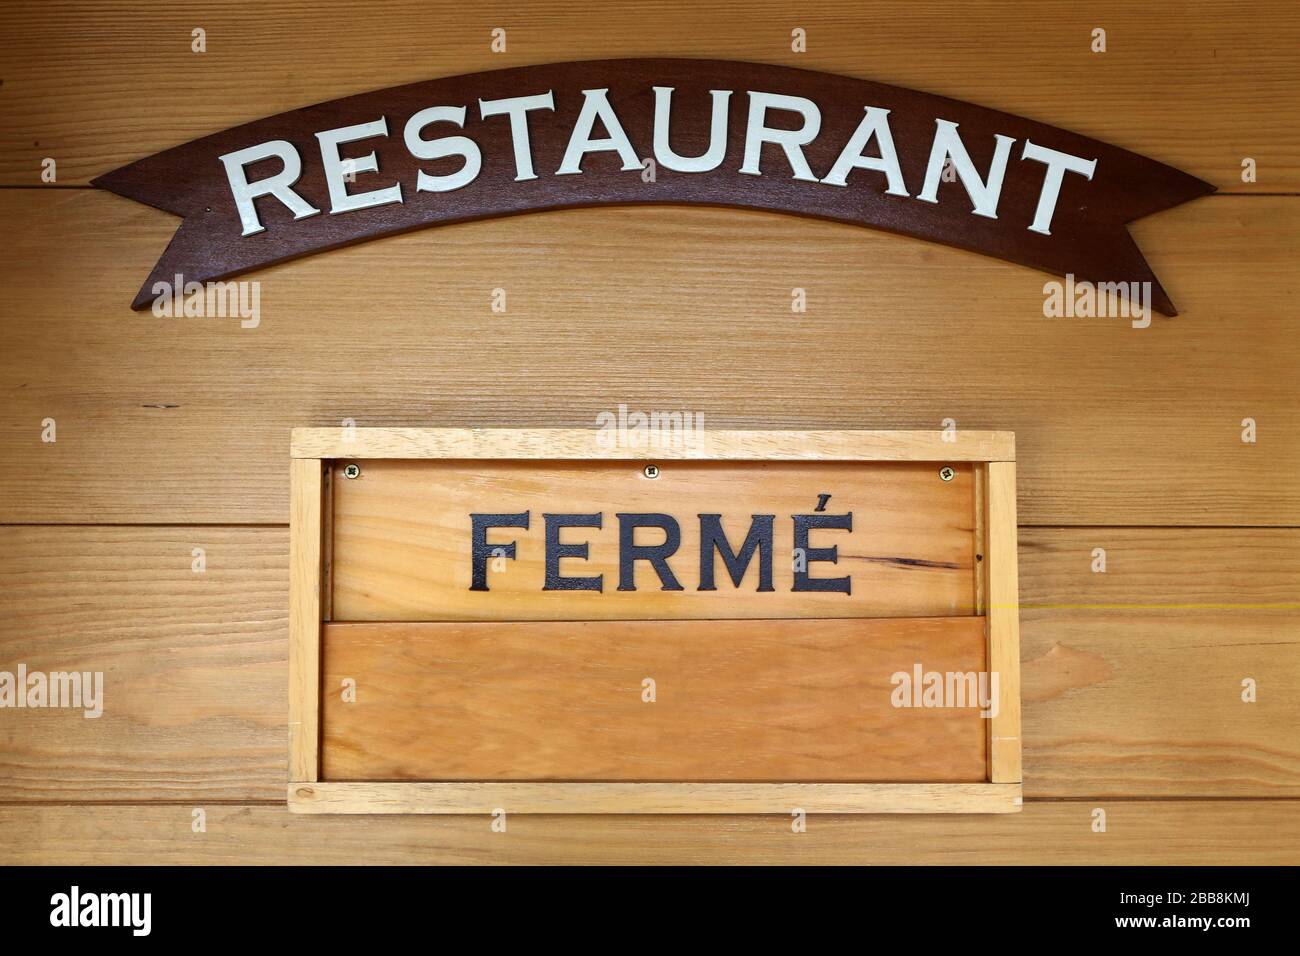 Restaurant. Fermé. Haute-Savoie. France. Stock Photo